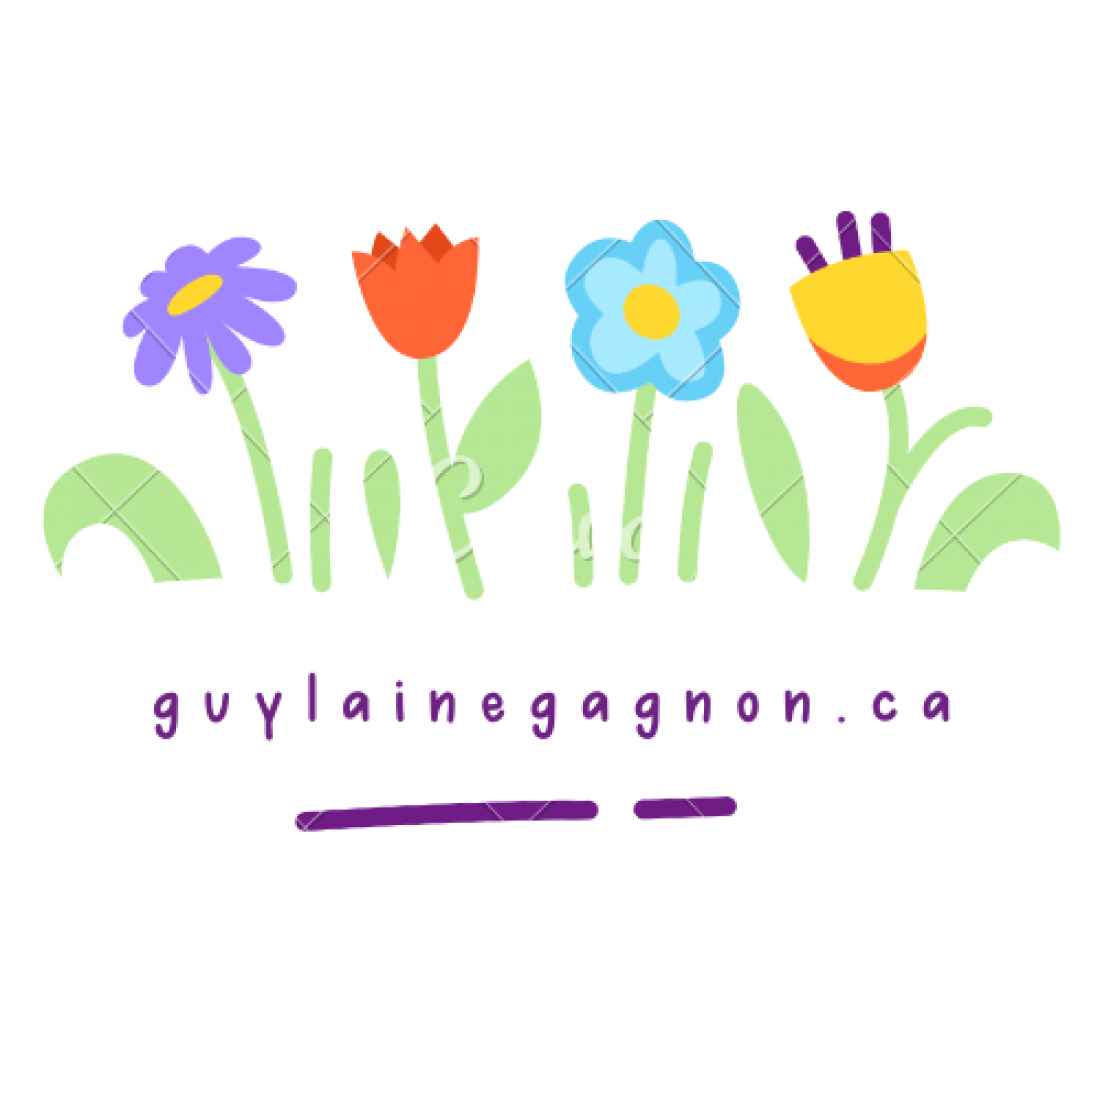 guylainegagnon.ca logo